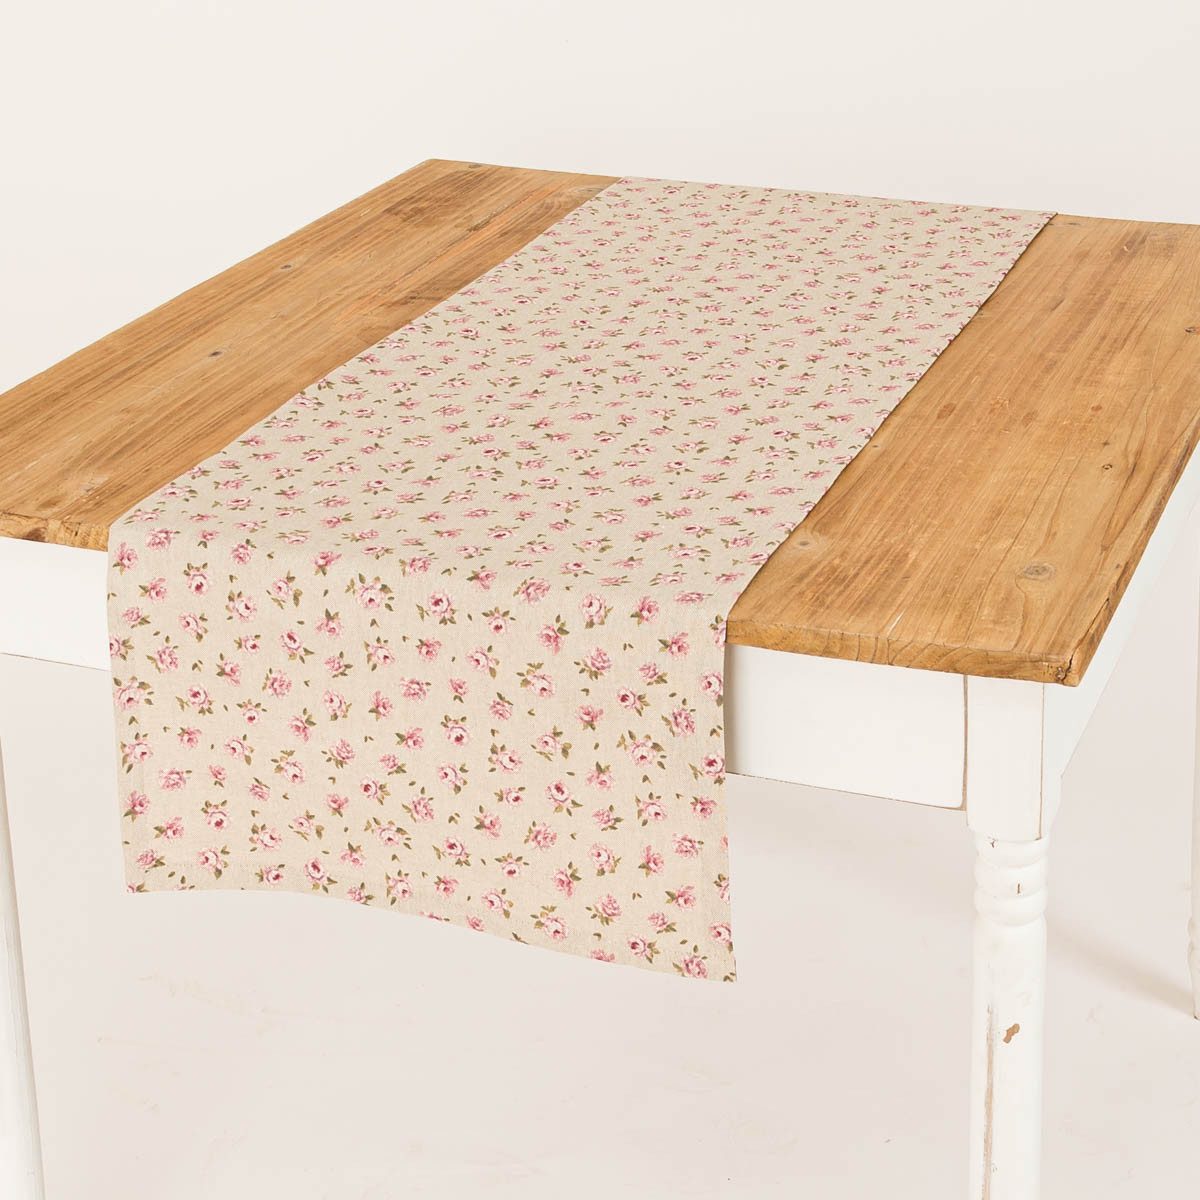 SCHÖNER LEBEN. Tischläufer Tischläufer Classic Little Rose Rosenblüten natur rosa 40x160cm, handmade